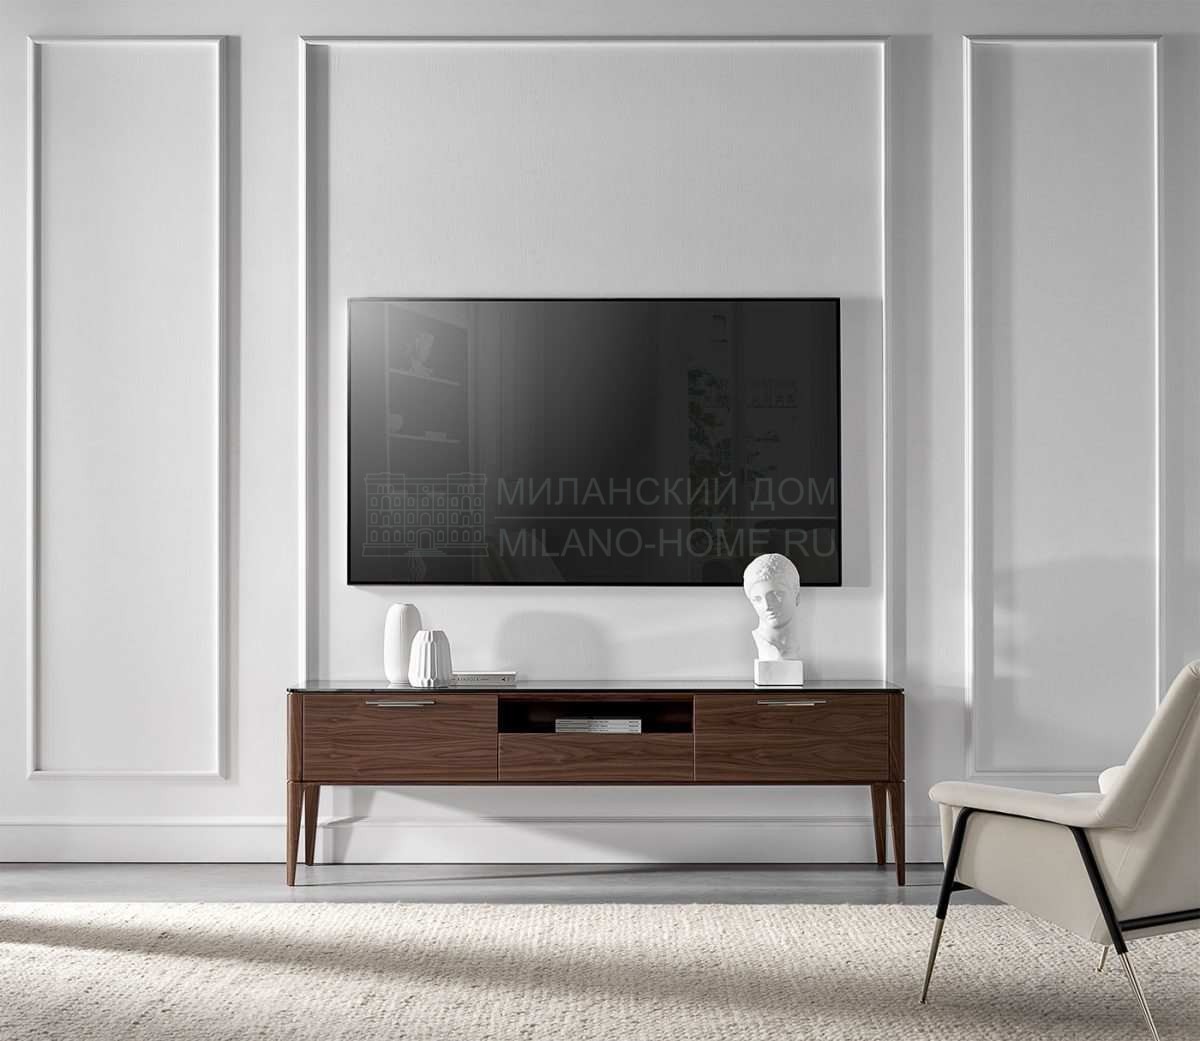 Мебель для ТВ Lungarno tv cabinet из Италии фабрики TOSCONOVA